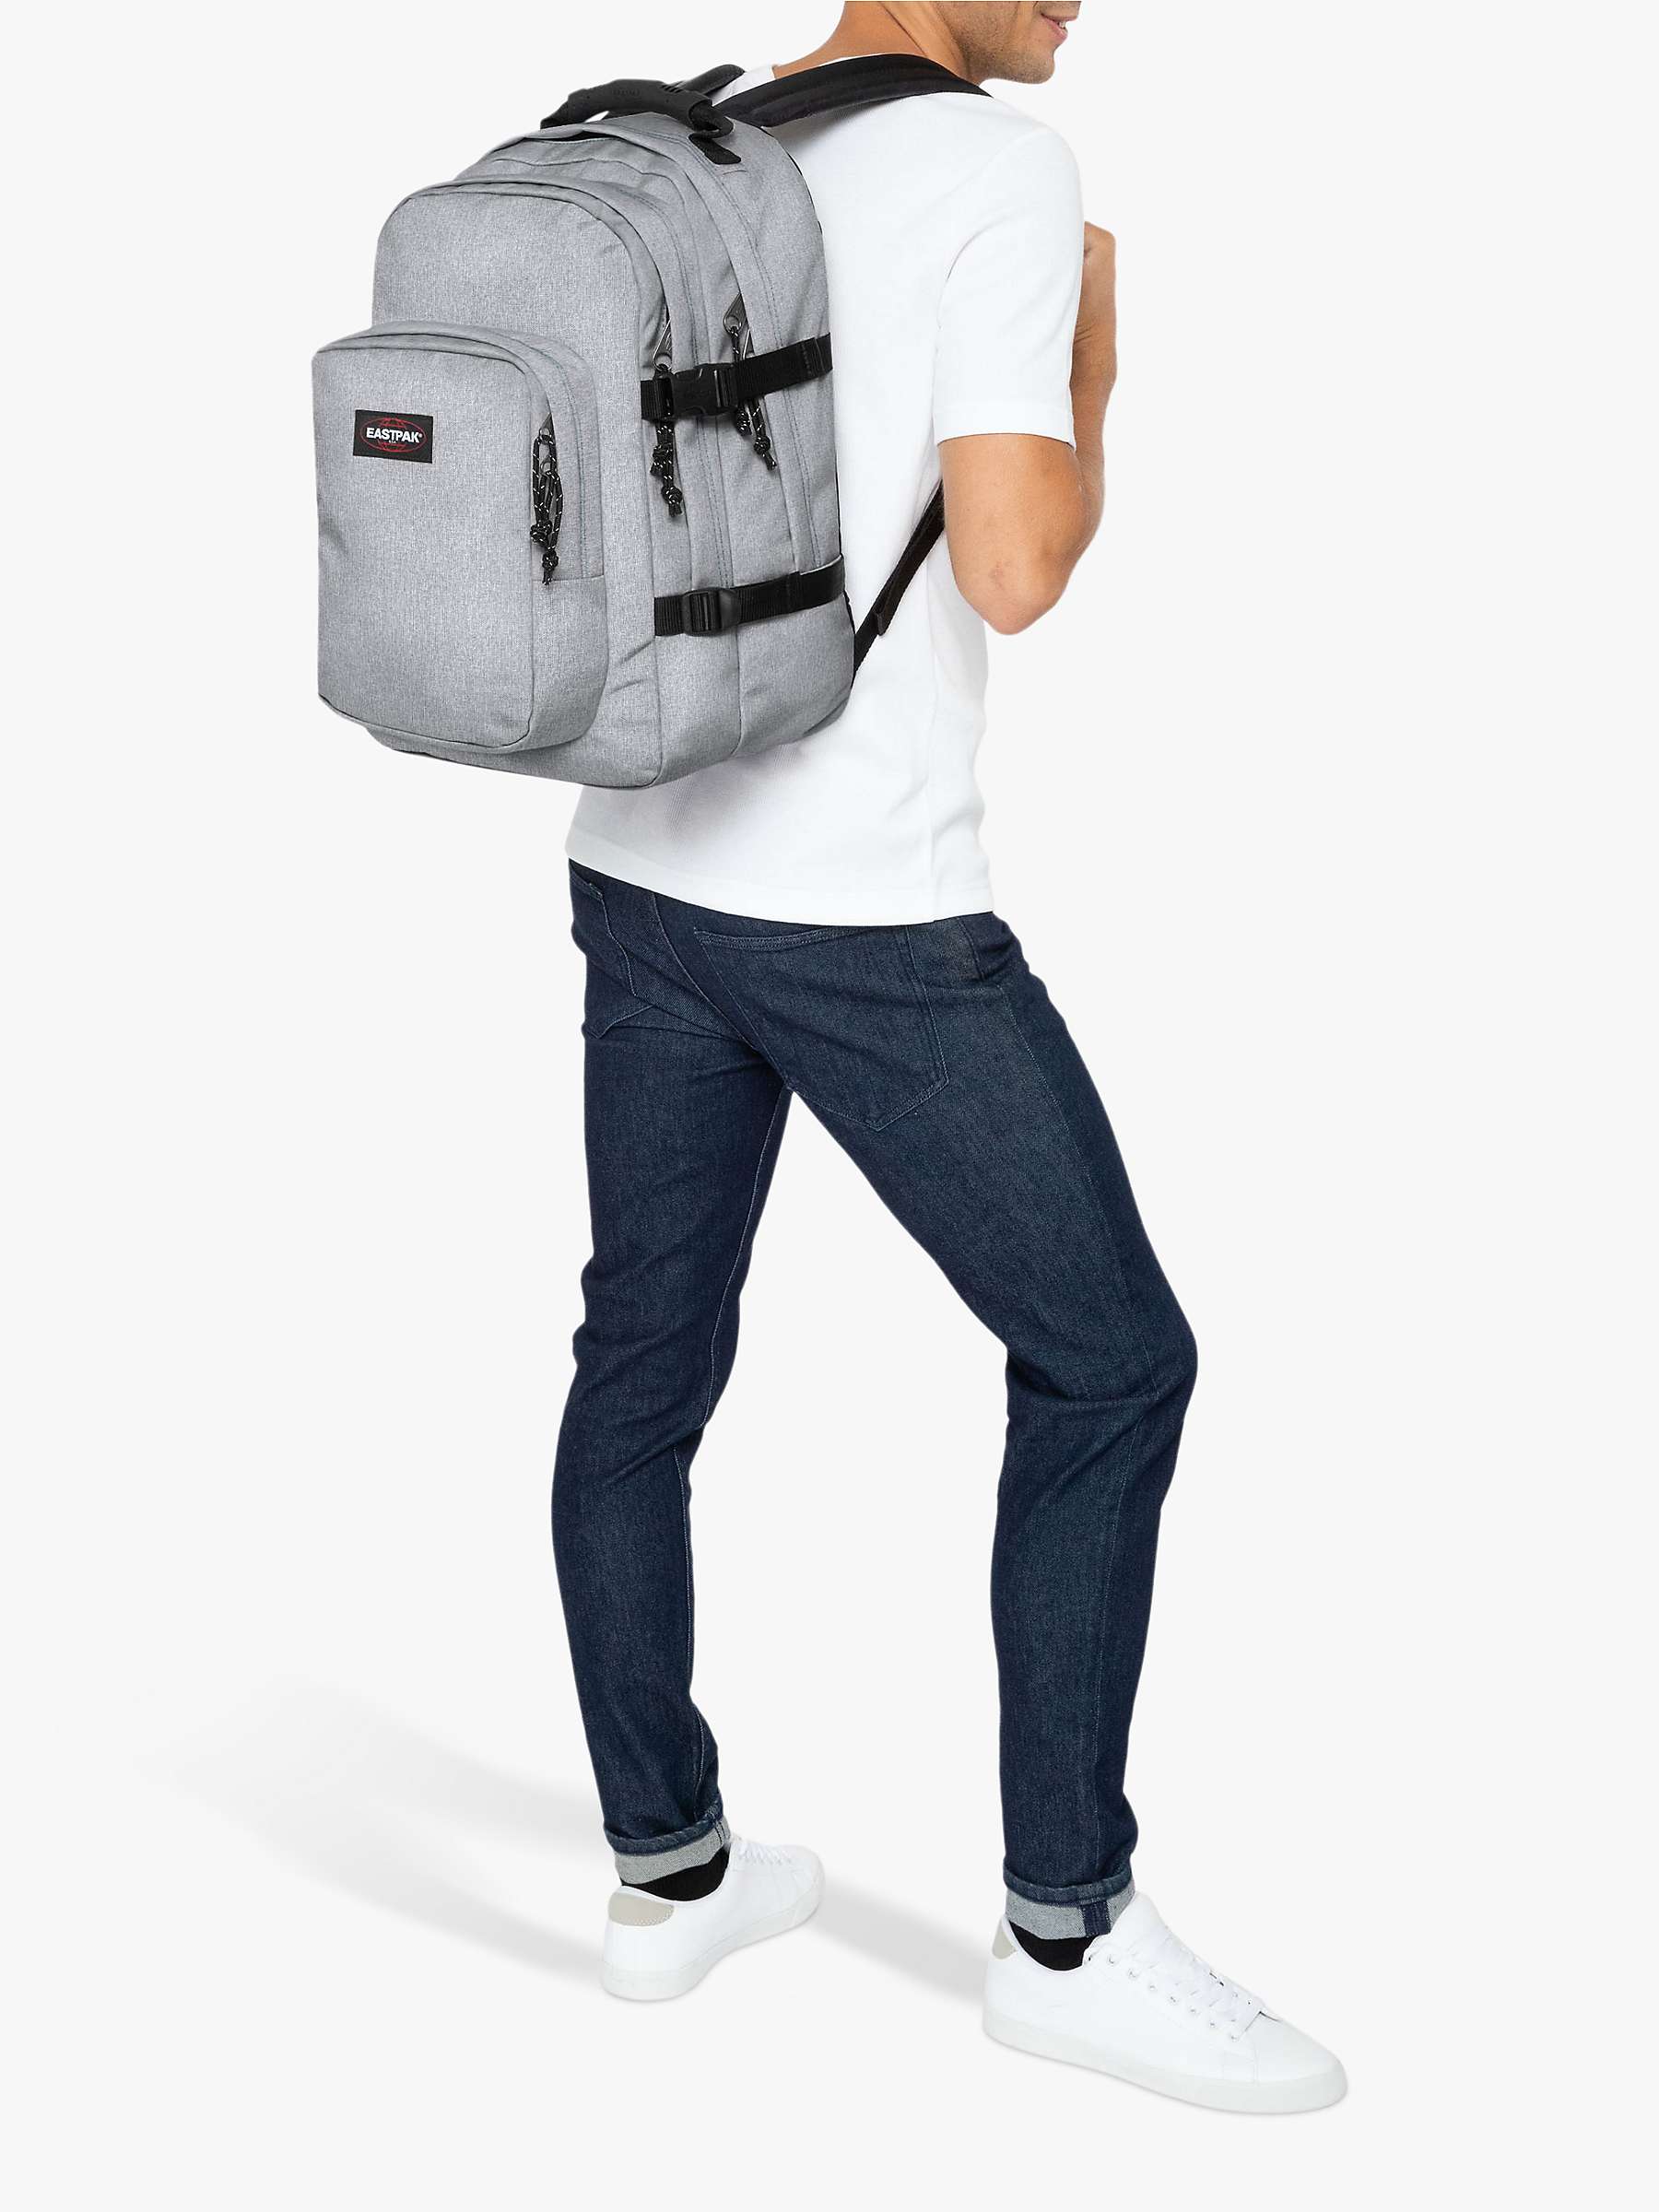 Buy Eastpak Provider Laptop Backpack, Sunday Grey Online at johnlewis.com